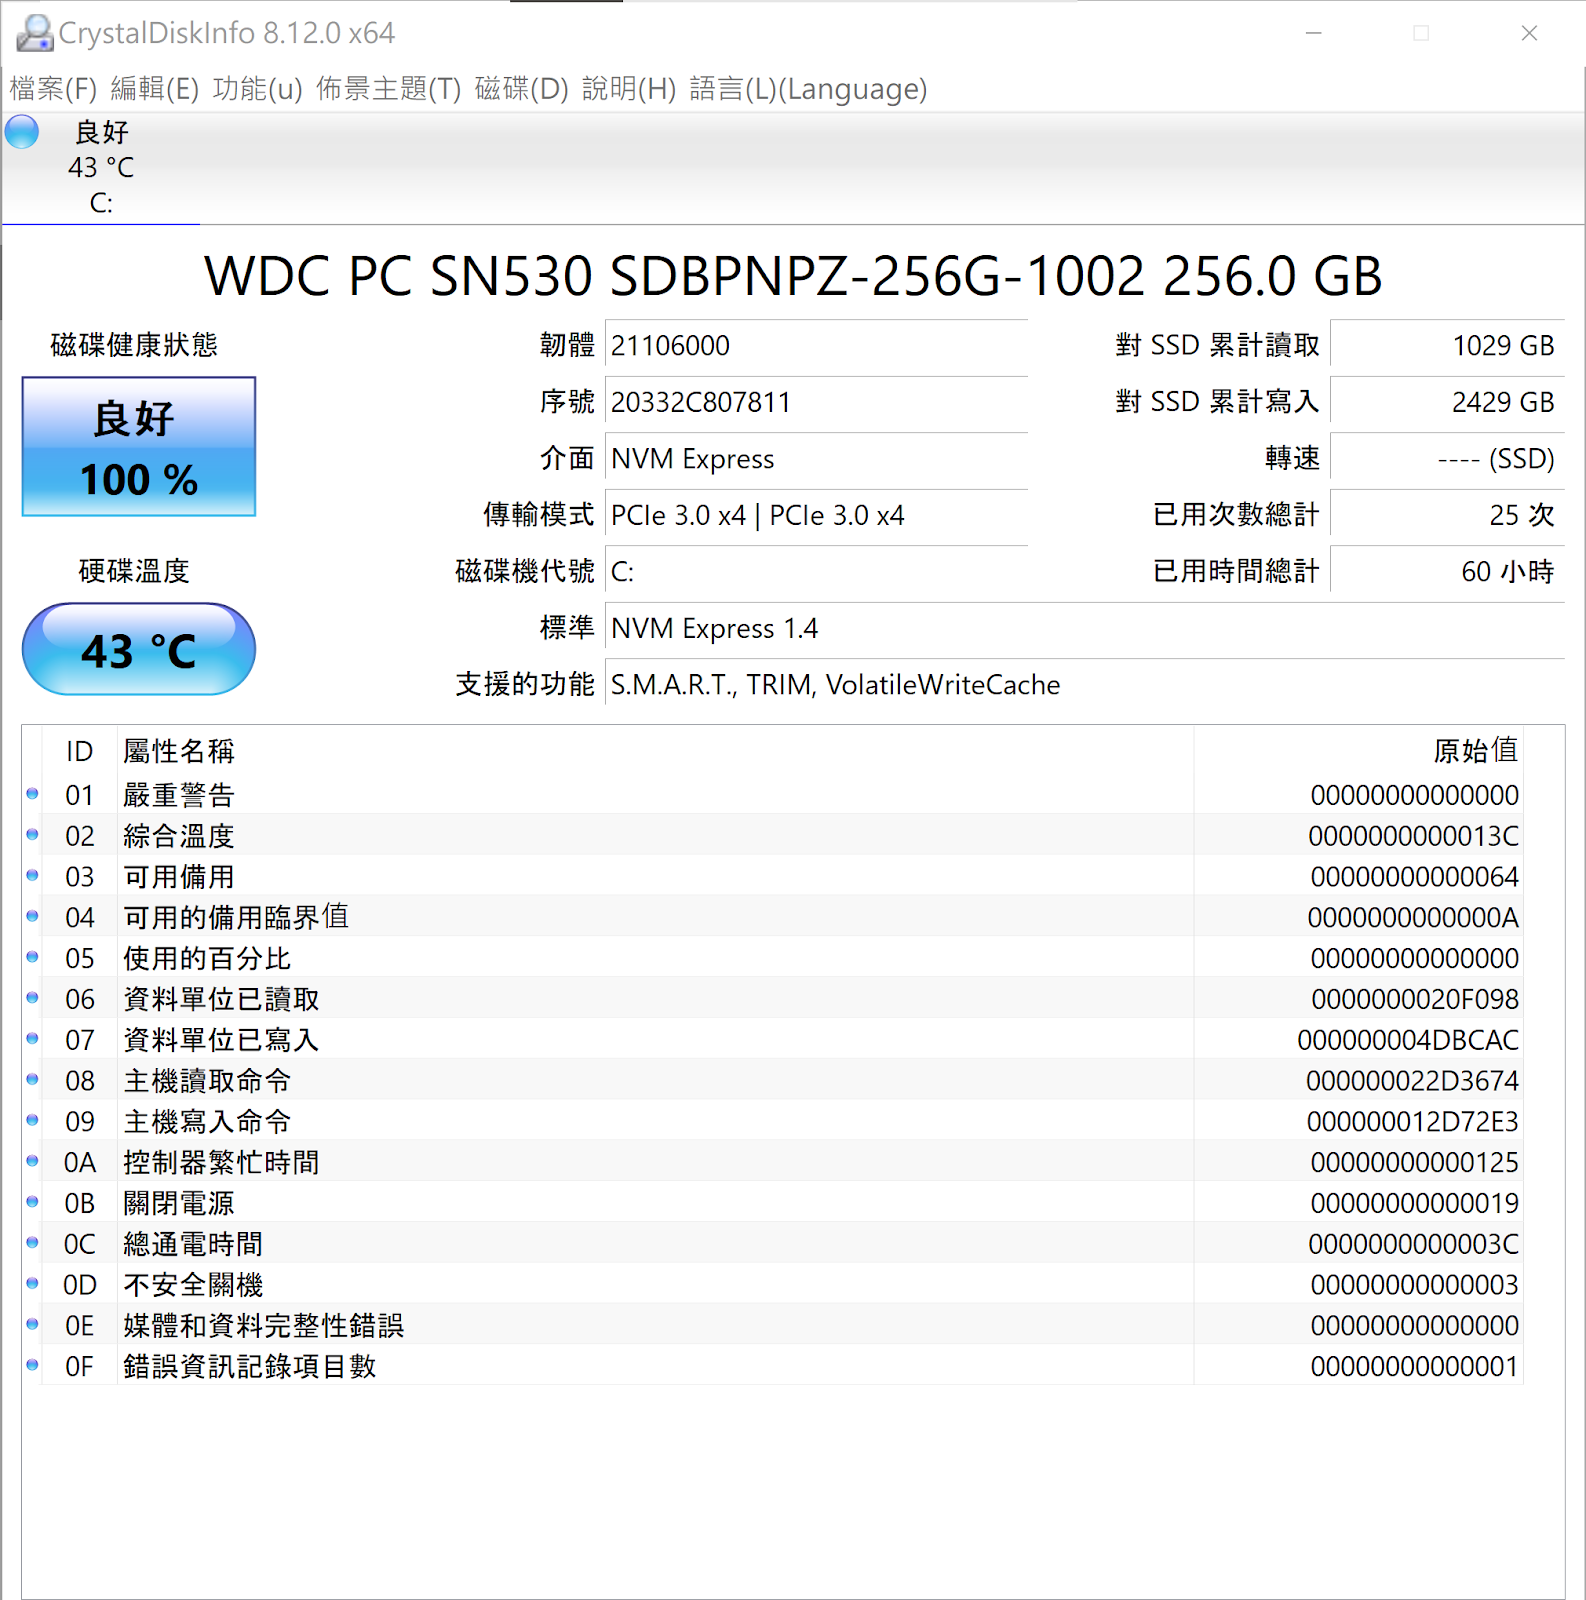 方寸間給滿擴充性能 ASUS VivoMini VC66-C2 Mini PC 開箱體驗 | Intel 第 10 代、DDR4、4K UHD 輸出、M.2 SSD、WiFi 6、NAS、文書機、多媒體 | 科技狗 - ASUS, mini PC, PTT, VC66-C2 104UNTA, VivoMini, 華碩 - 科技狗 3C DOG